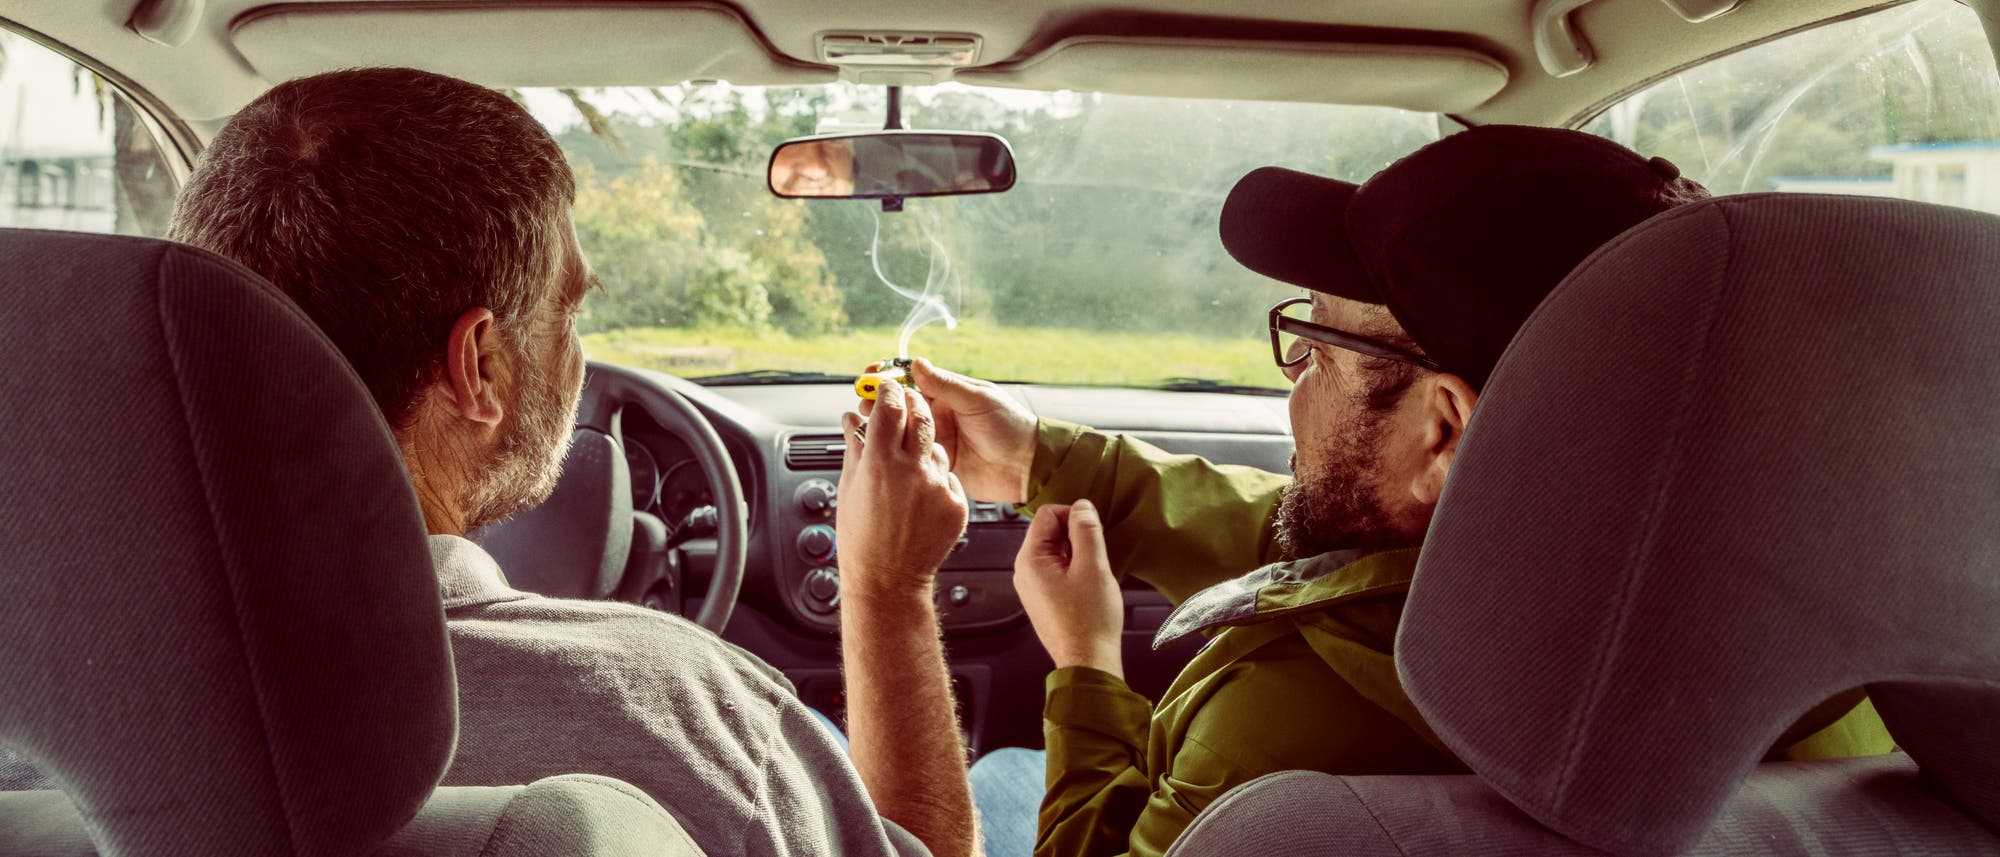 Zwei Männer beim vergnügten Cannabiskonsum im Auto